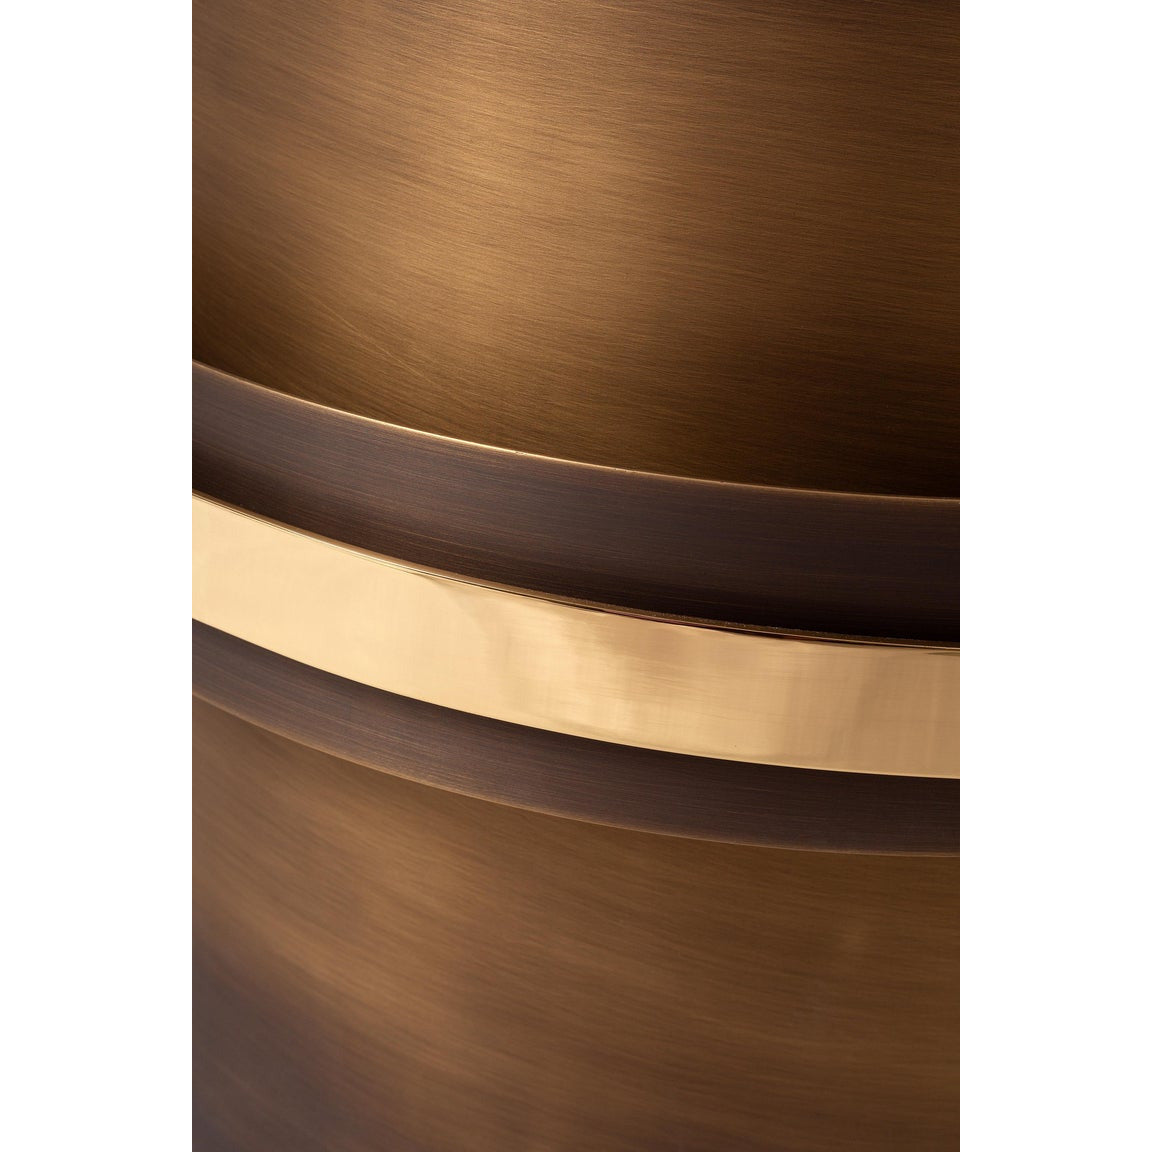 Orbit Accent Table in Dark Bronze | Modern Furniture + Decor